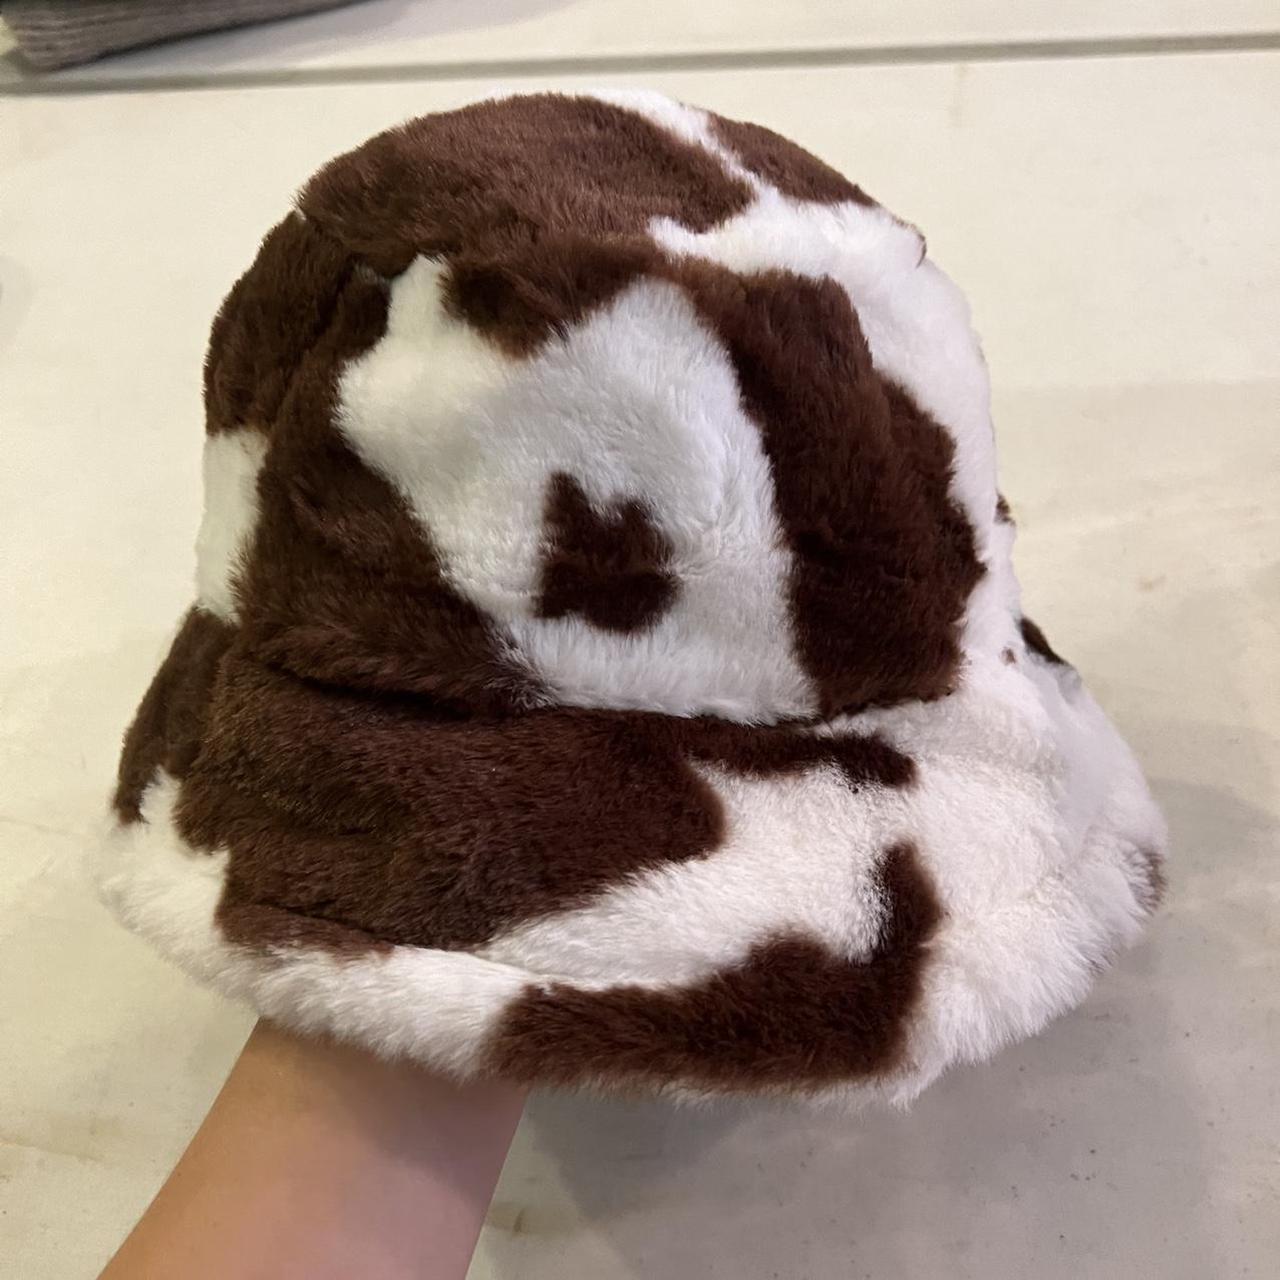 Women's Cow Print Faux Fur Bucket Hat